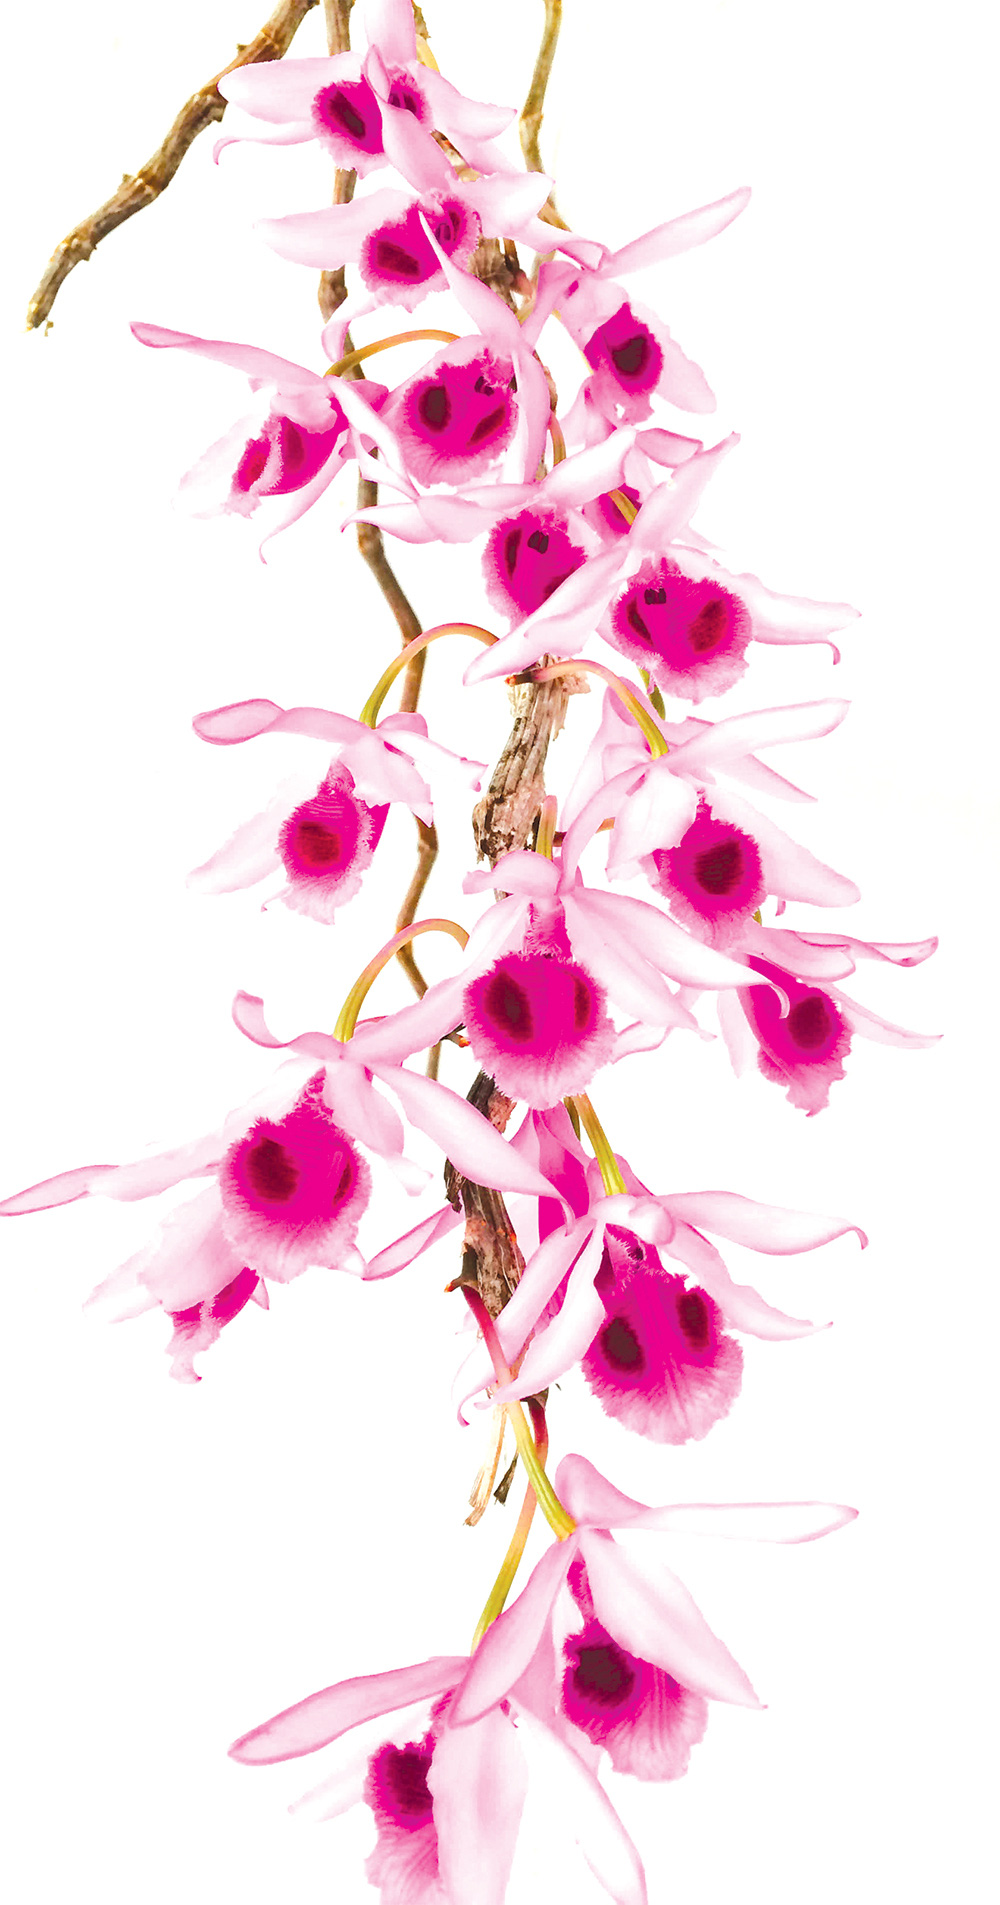 Hoa lan phi điệp đột biến 5 cánh trắng Phú Thọ trong vườn lan rừng của chàng trai An Giang, ai xem cũng trầm trồ - Ảnh 1.